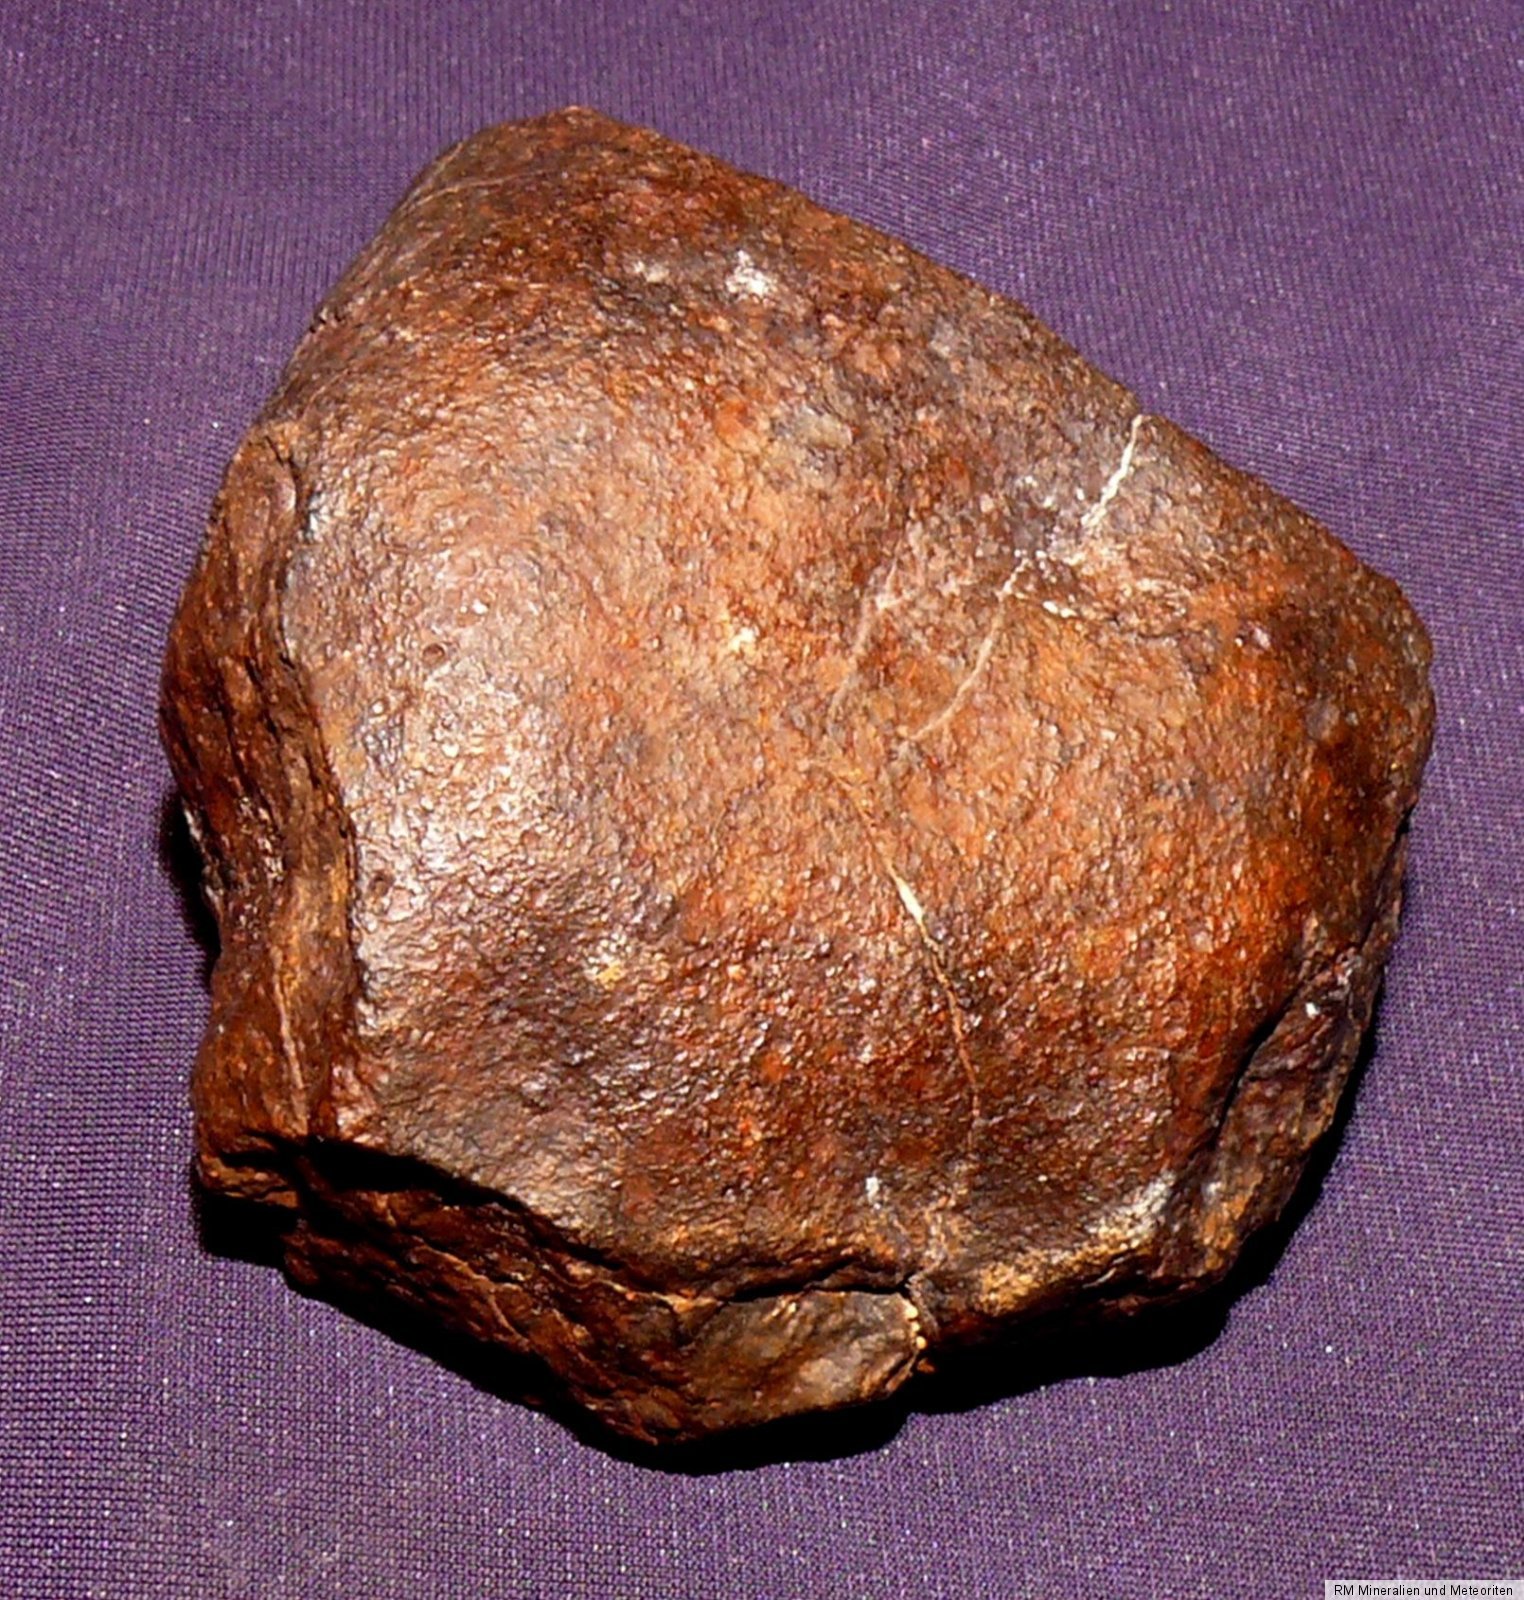 meteorite definition